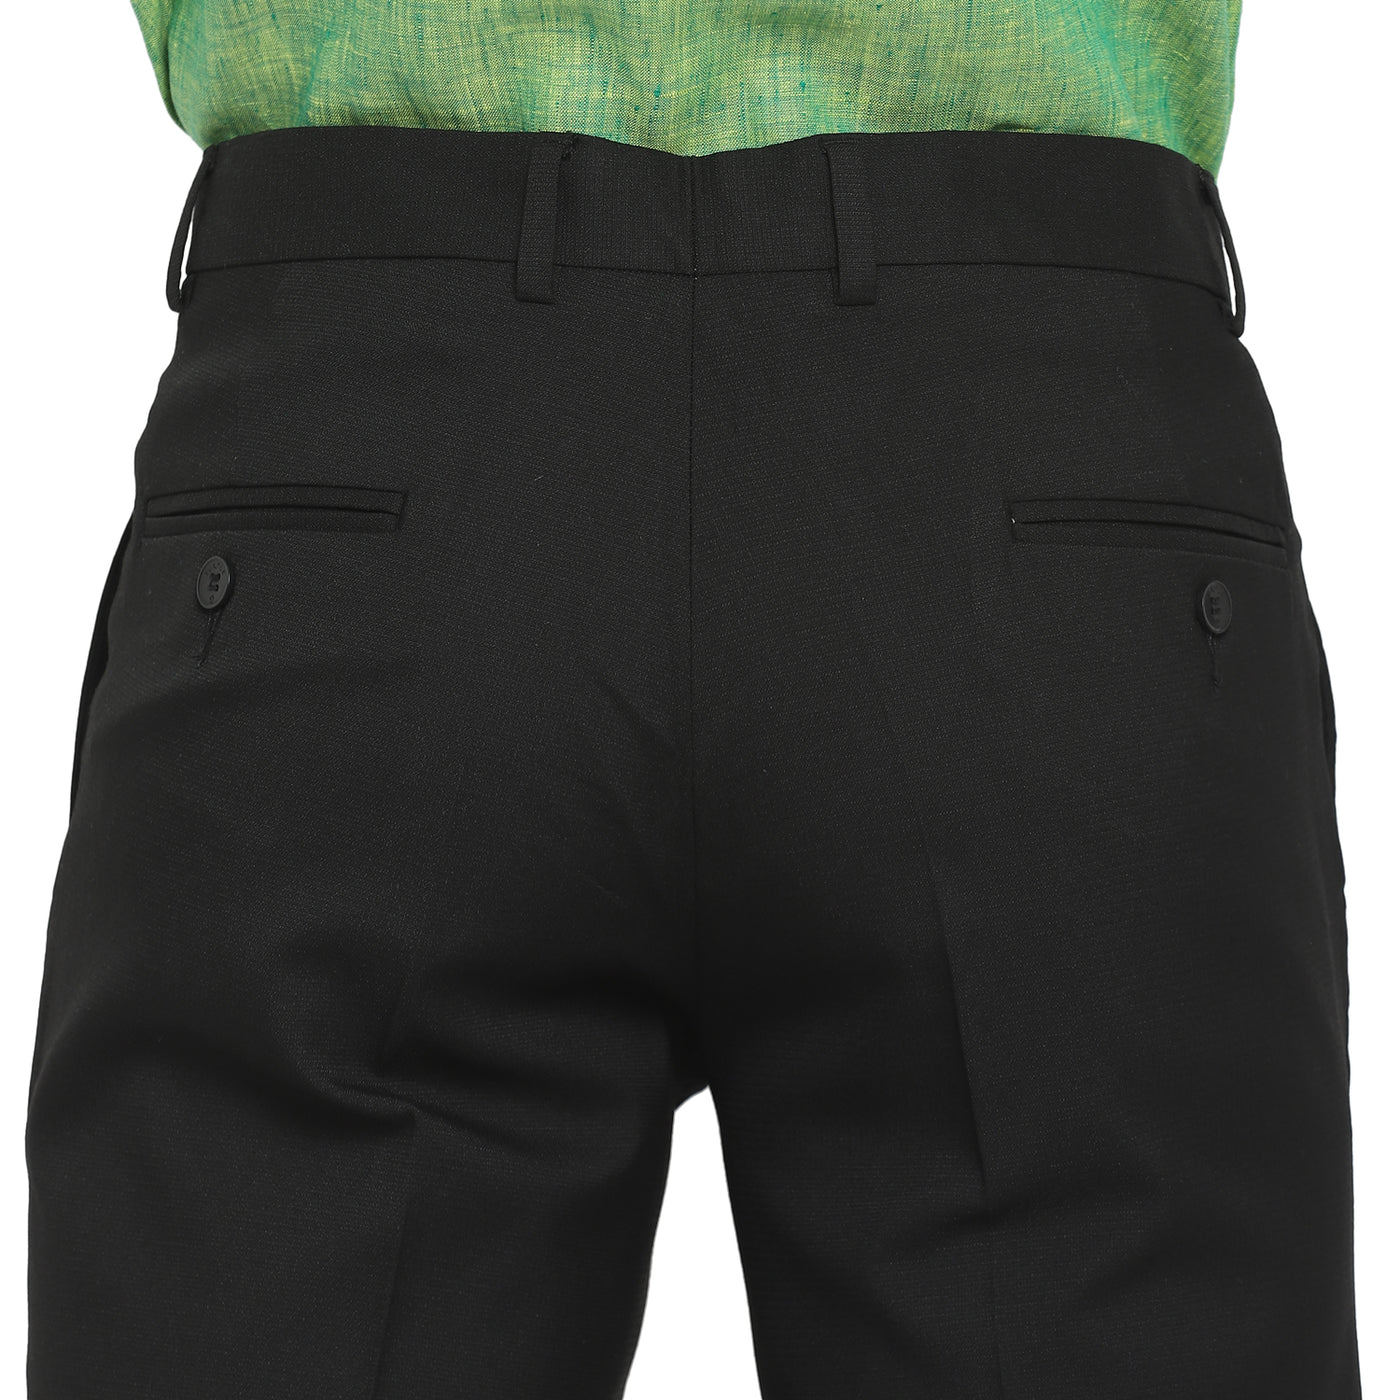 Black Slim Fit Self Design Trouser